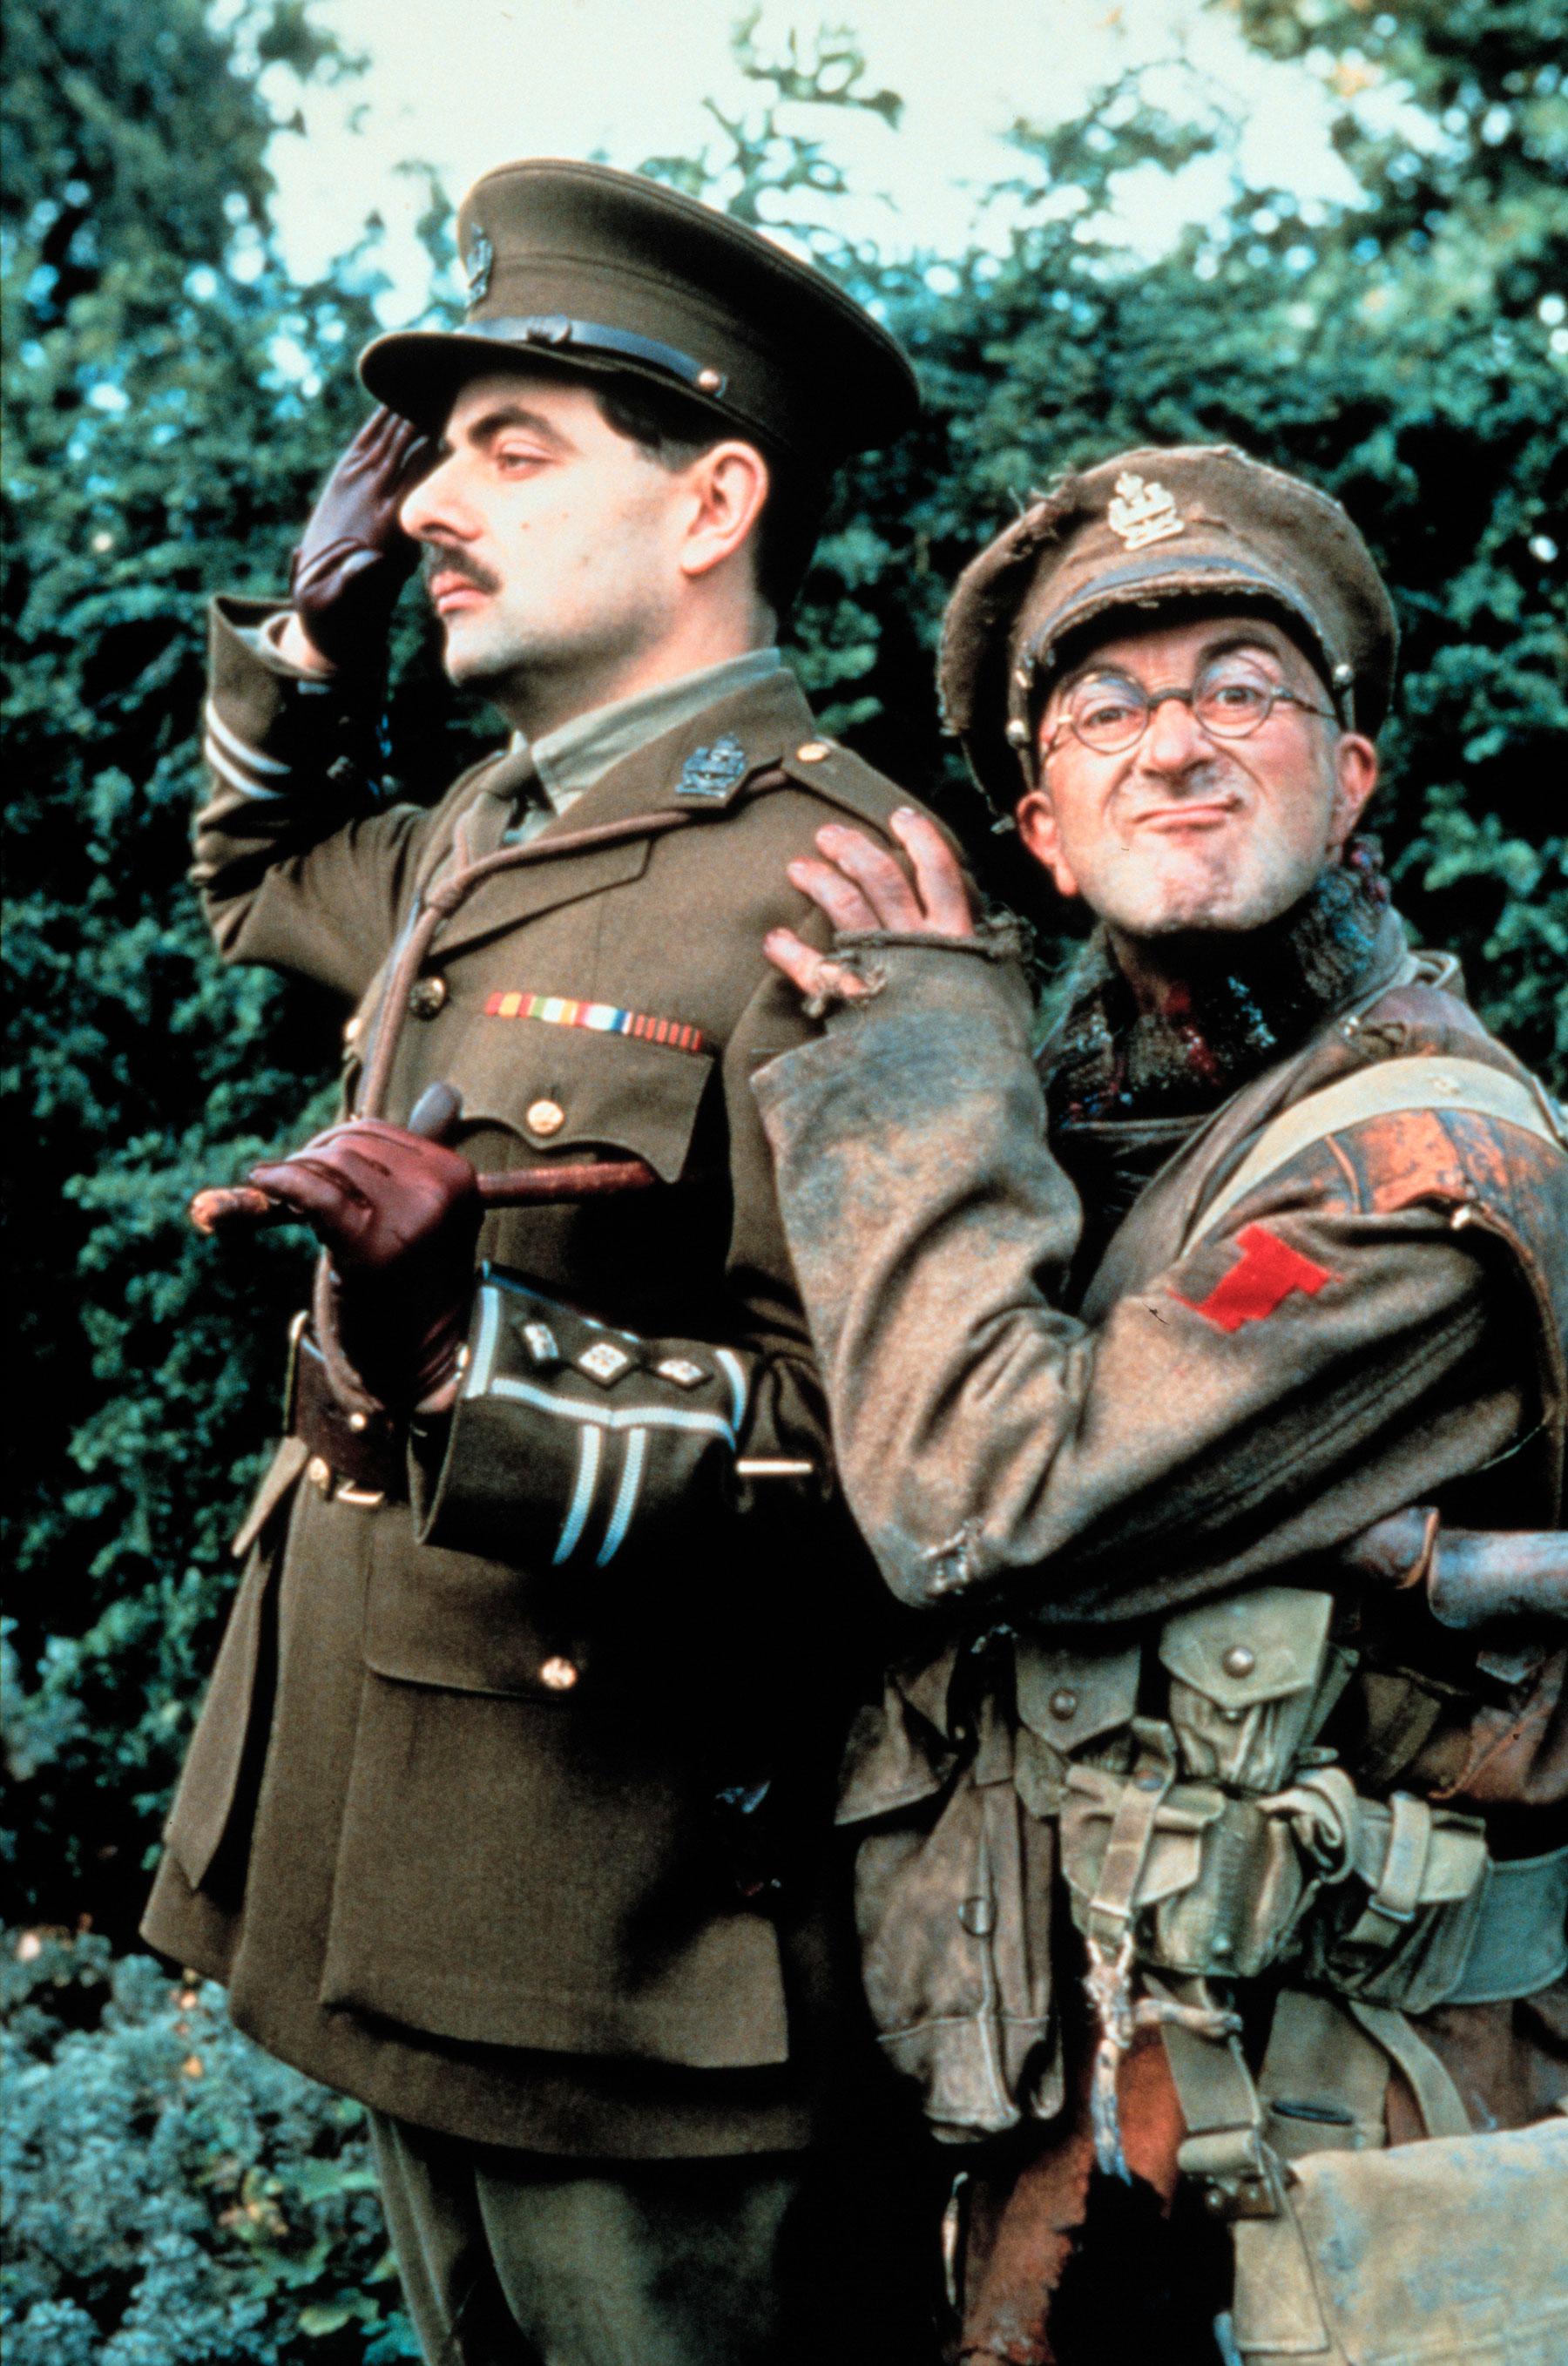 Rowan Atkinson och Tony Robinson, som spelade Baldrick, i tv-serien som utspelade sig i olika historiska perioder.